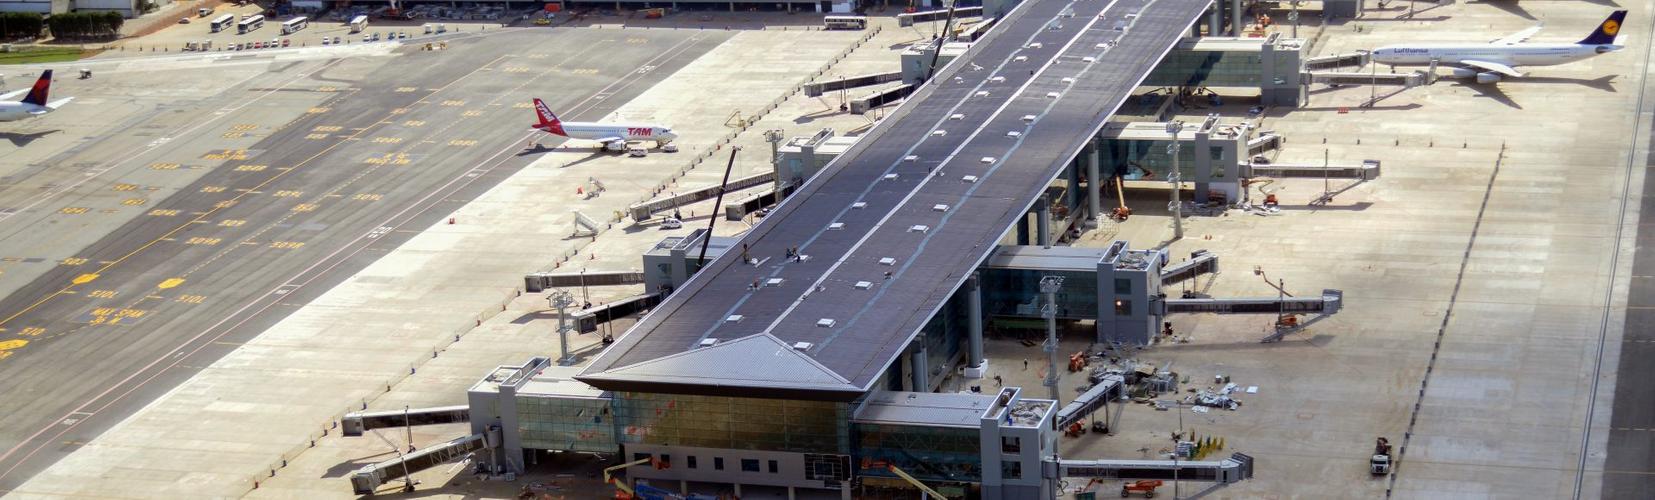 Aeroporto de Guarulhos - Terminal 3